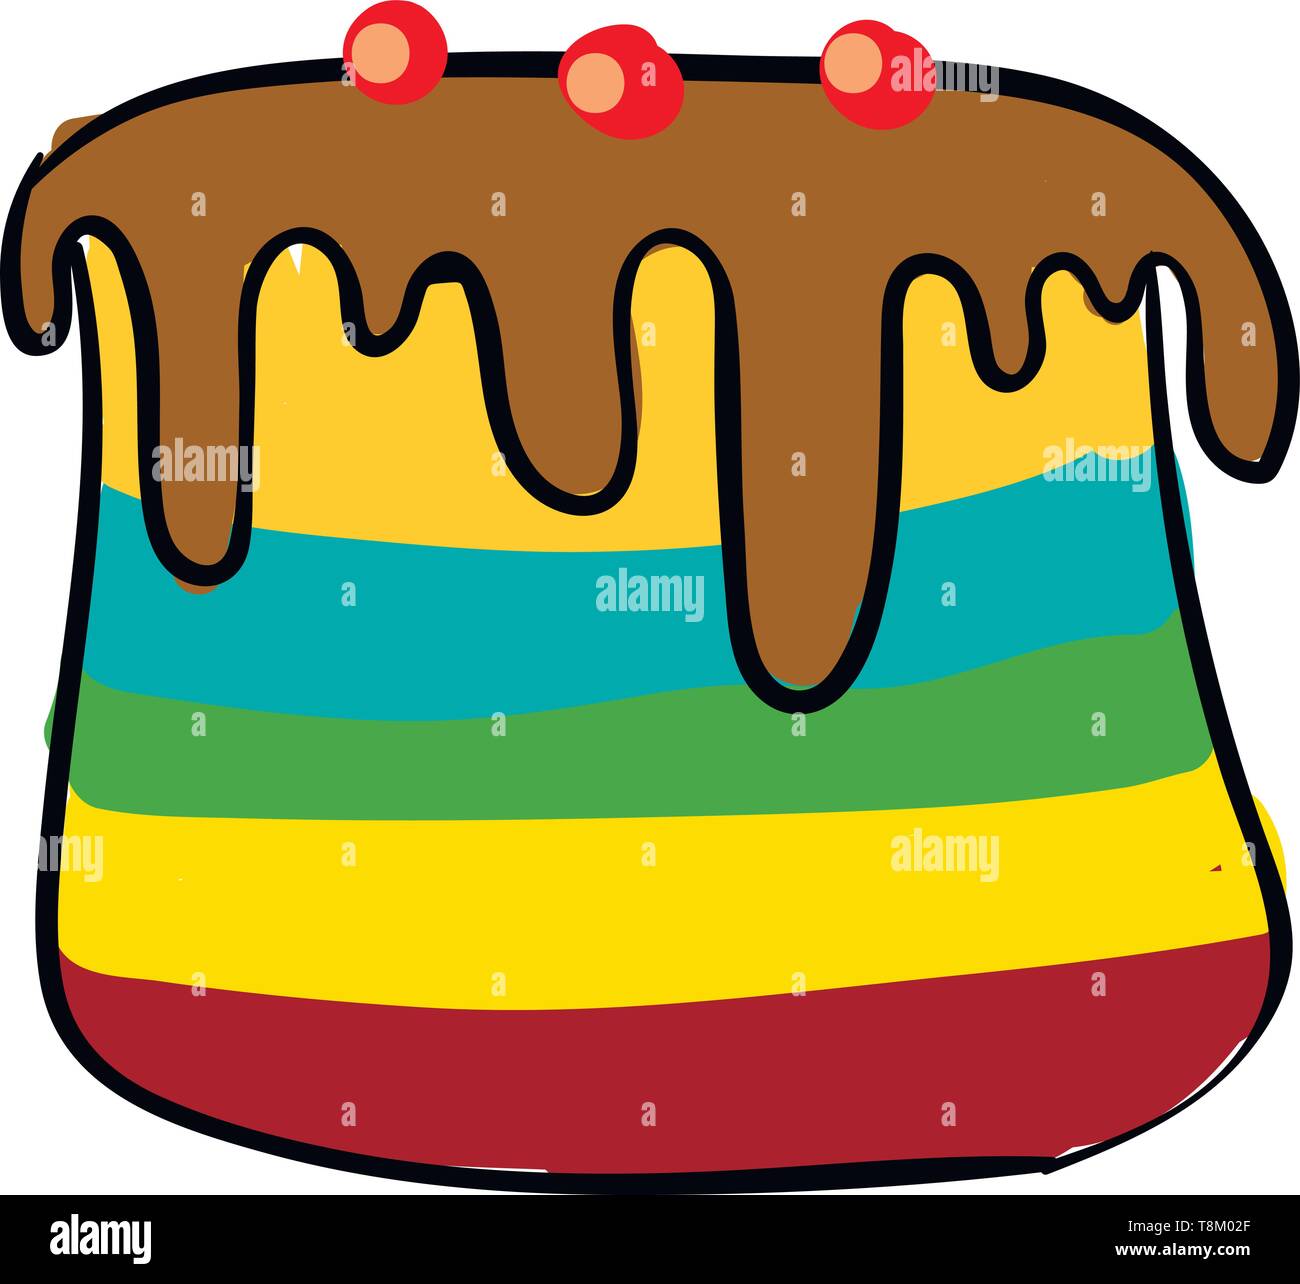 Un grande multi-colore di Torta con glassa di cioccolato e ciliegie sulla parte superiore, il vettore, il colore di disegno o illustrazione. Illustrazione Vettoriale